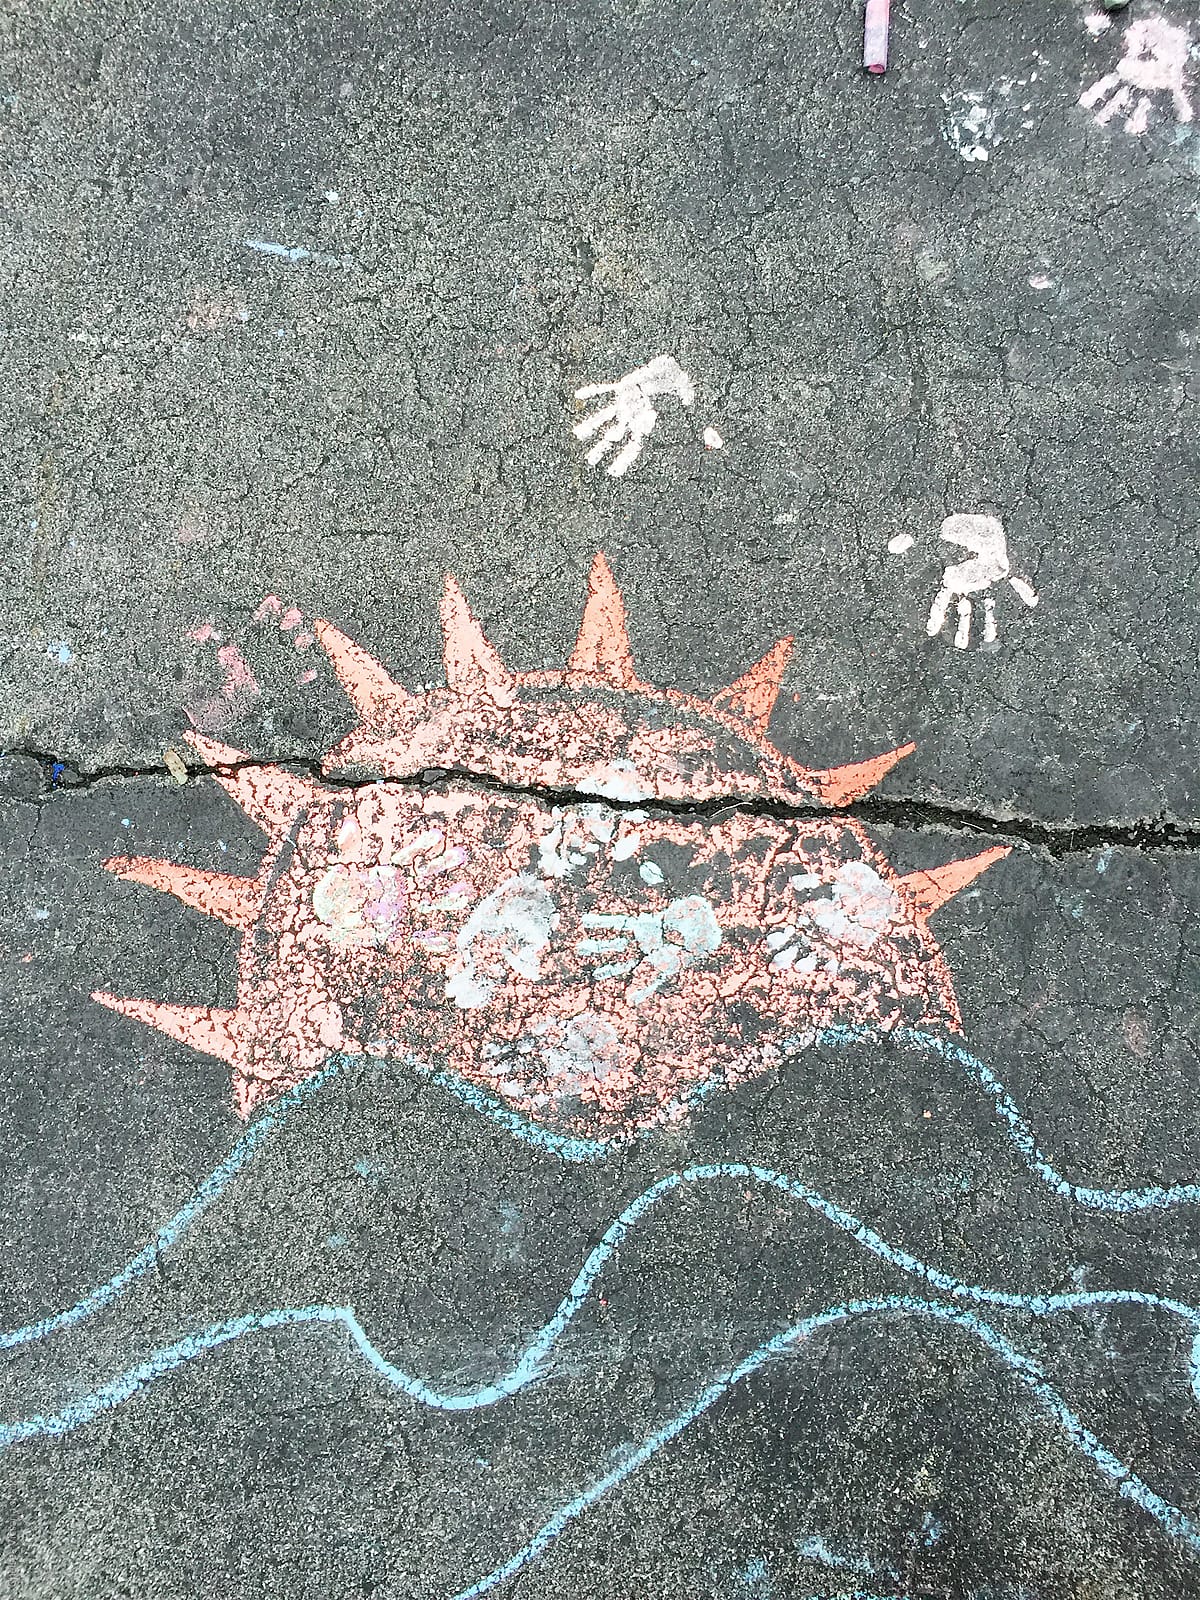 Chalk on the sidewalk